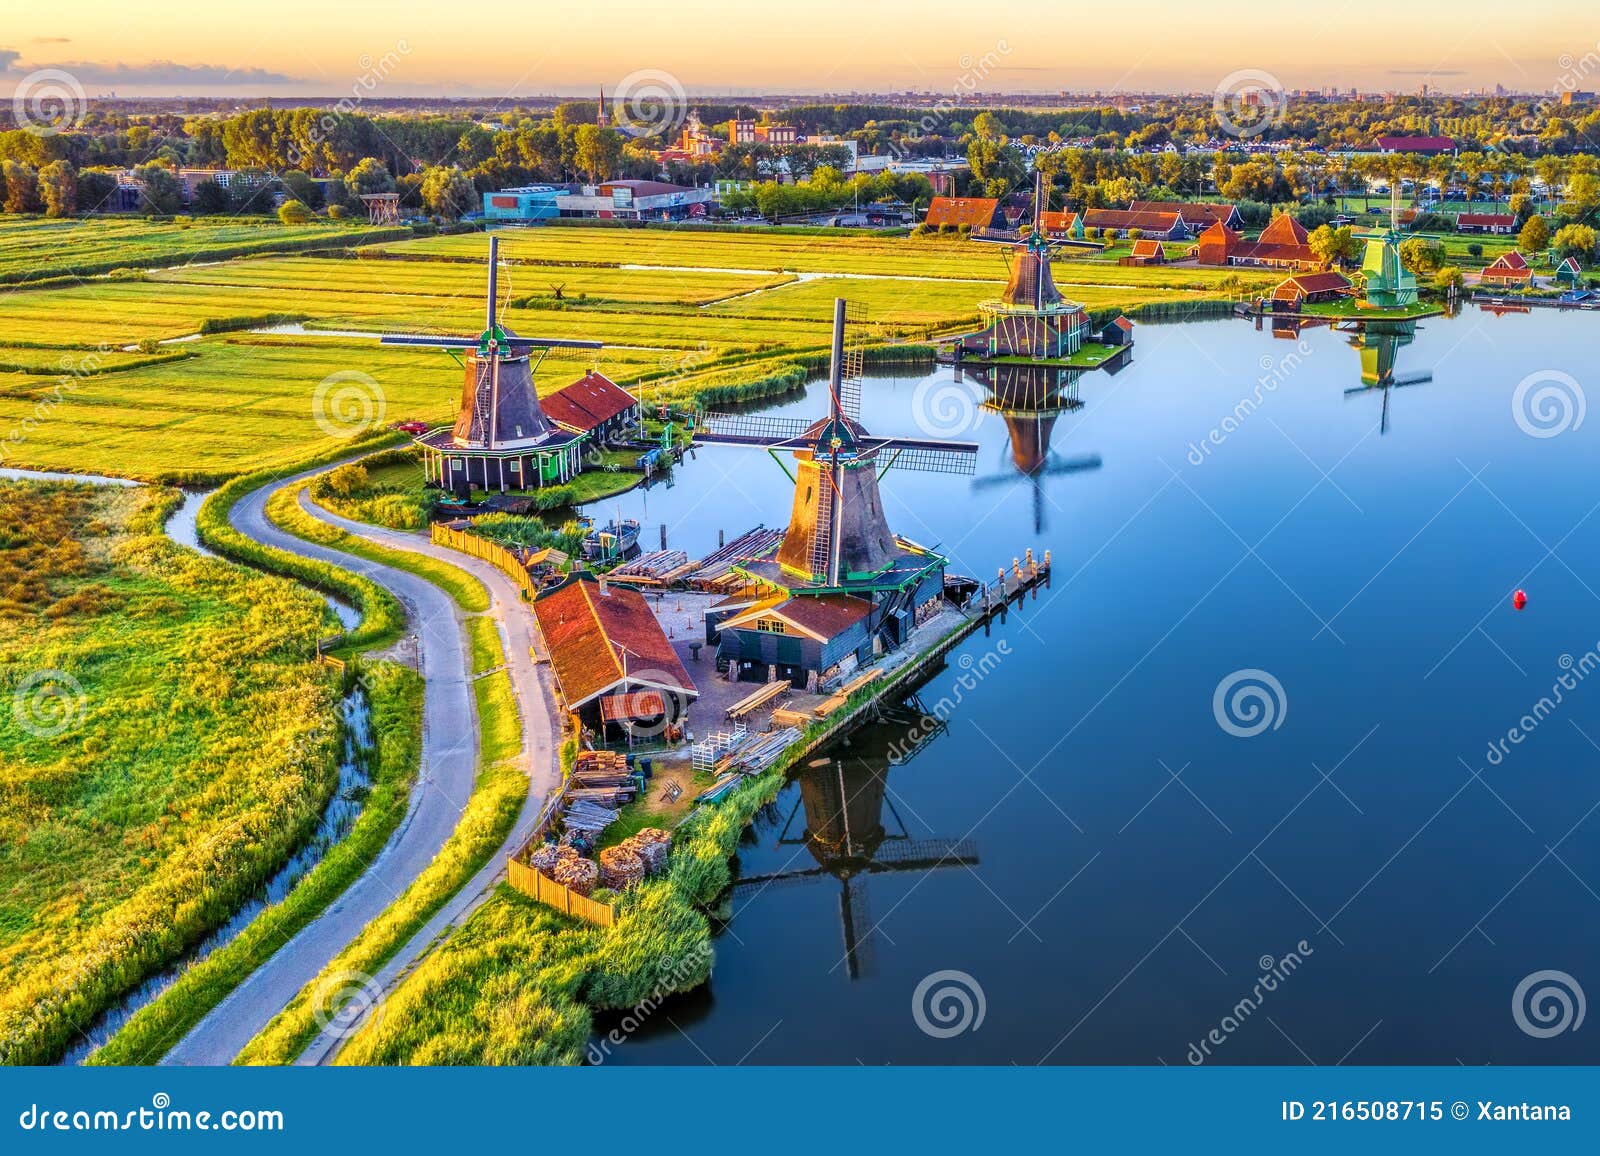 zaanse schans windmills in north holland, netherlands